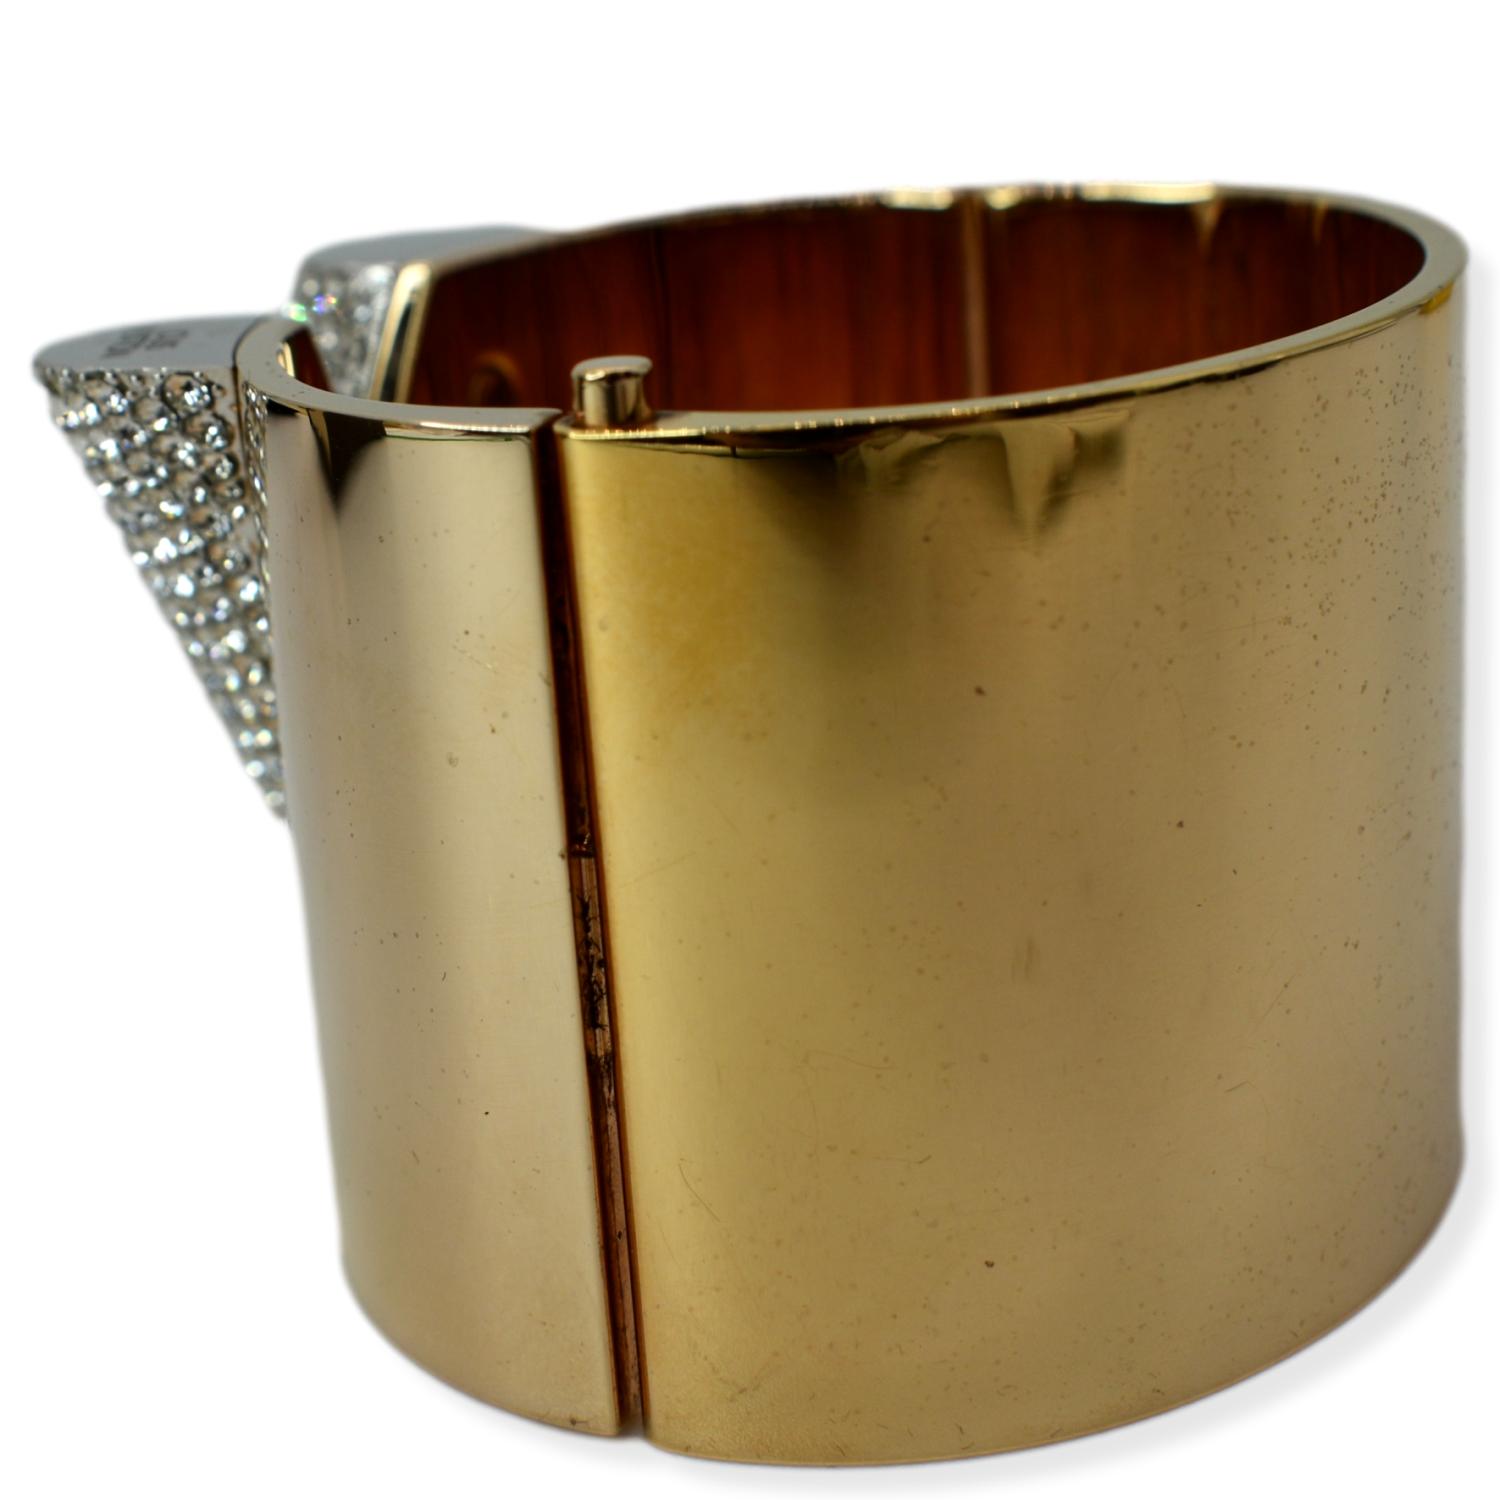 LOUIS VUITTON 'Essential V' Cuff Bracelet in Golden Finish Brass